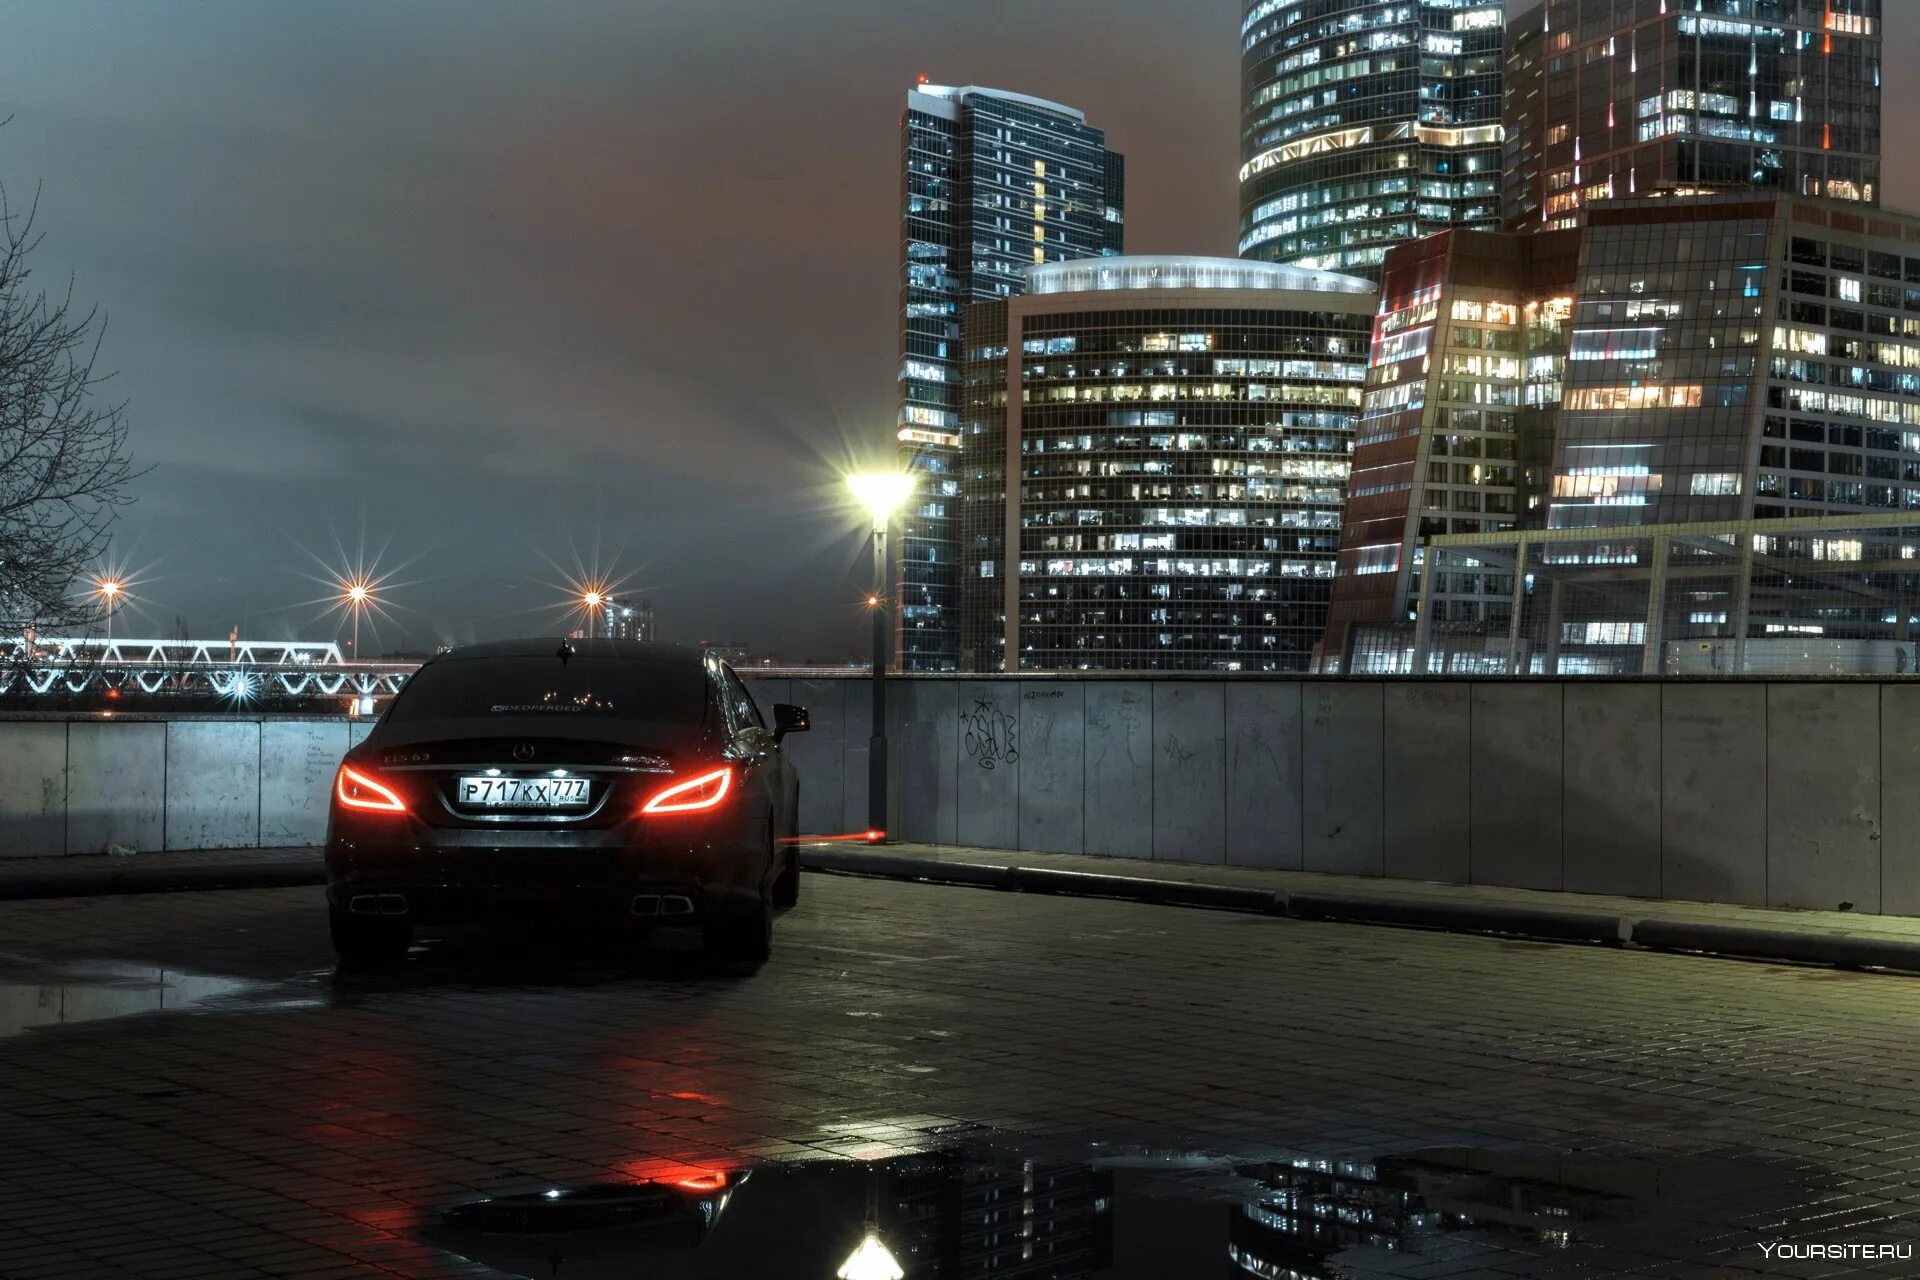 Mercedes Benz CLS 63 AMG ночью Москва. Мерседес АМГ С 63 В ночном городе. Москва ночь BMW f30. CLS 63 AMG ночью Москва Сити. Красивая машина ночью